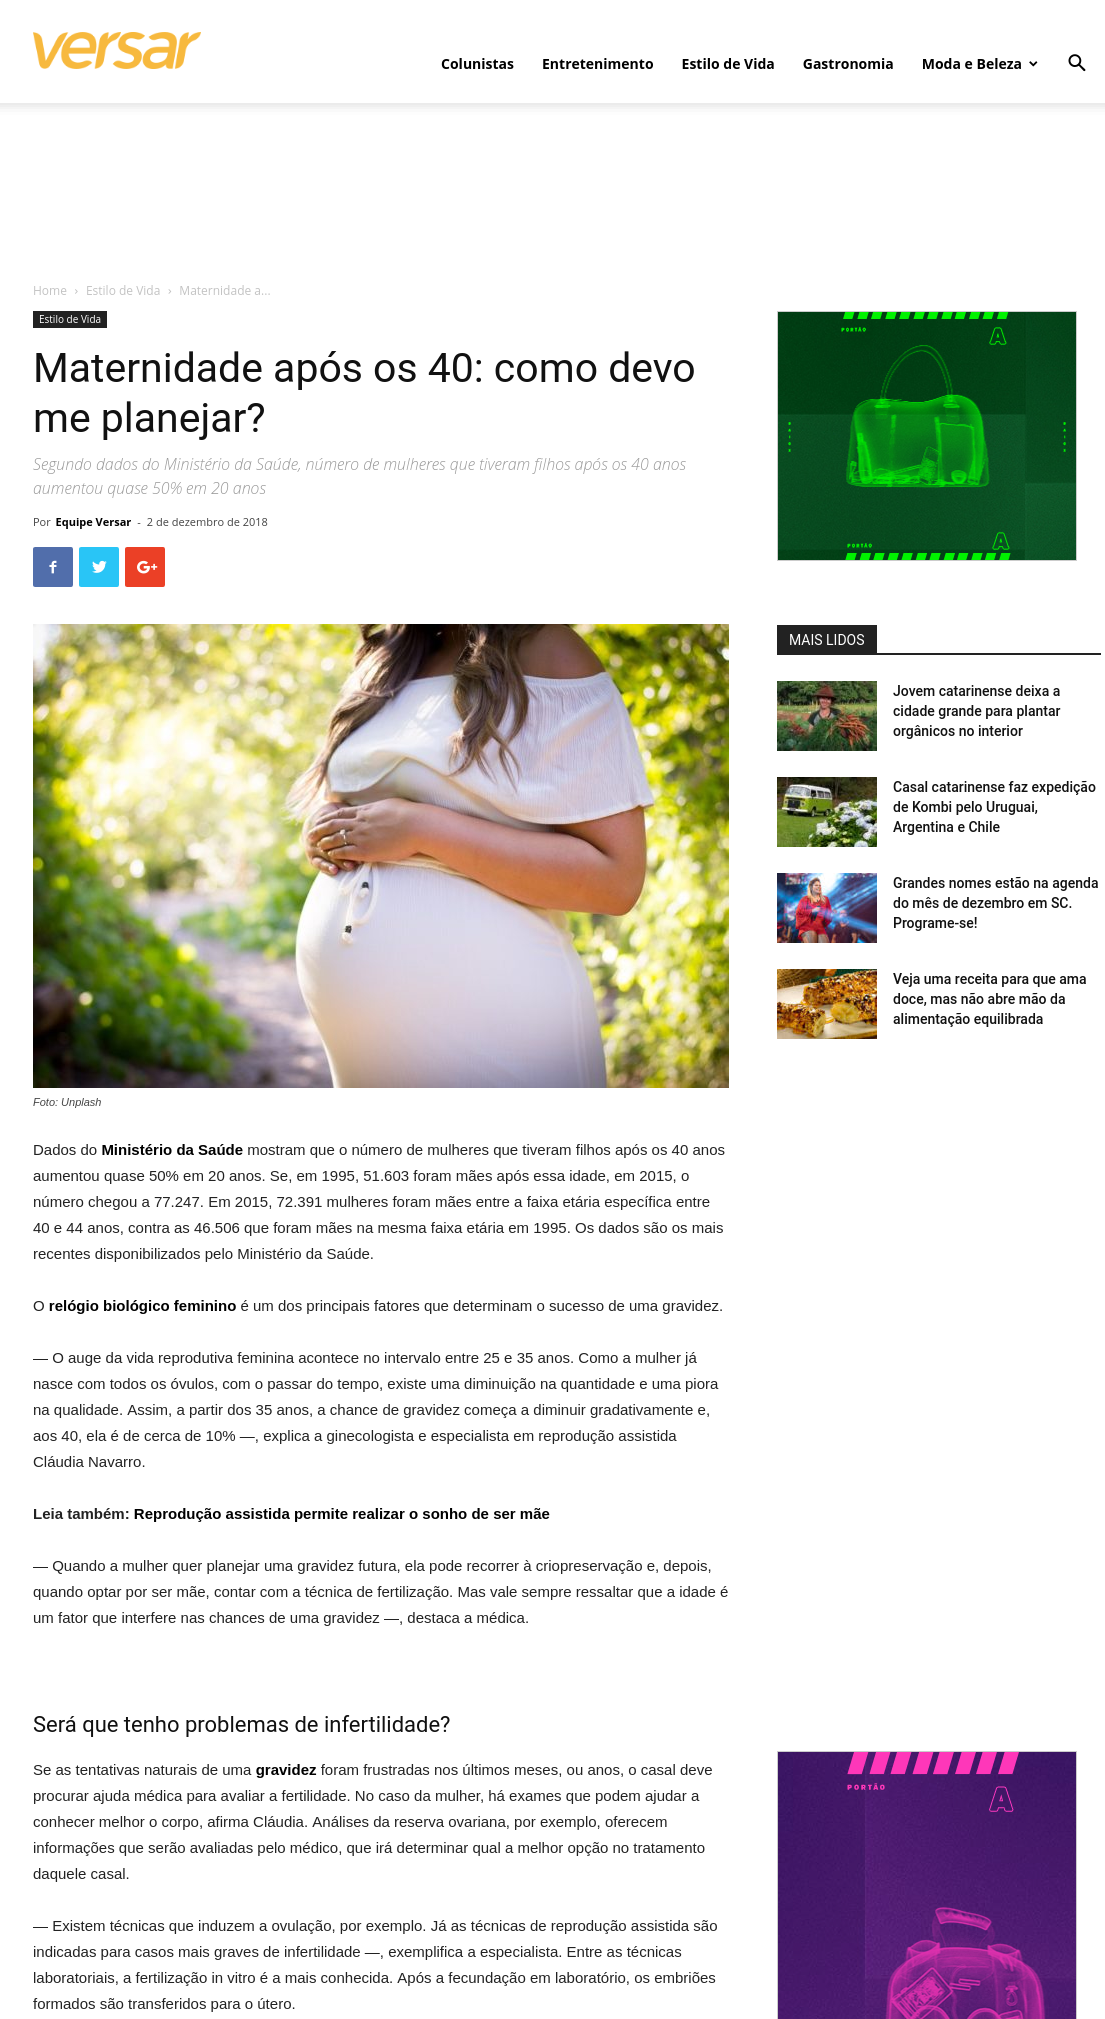 Revista Versar (site e facebook) – Maternidade após os 40: como devo me planejar?